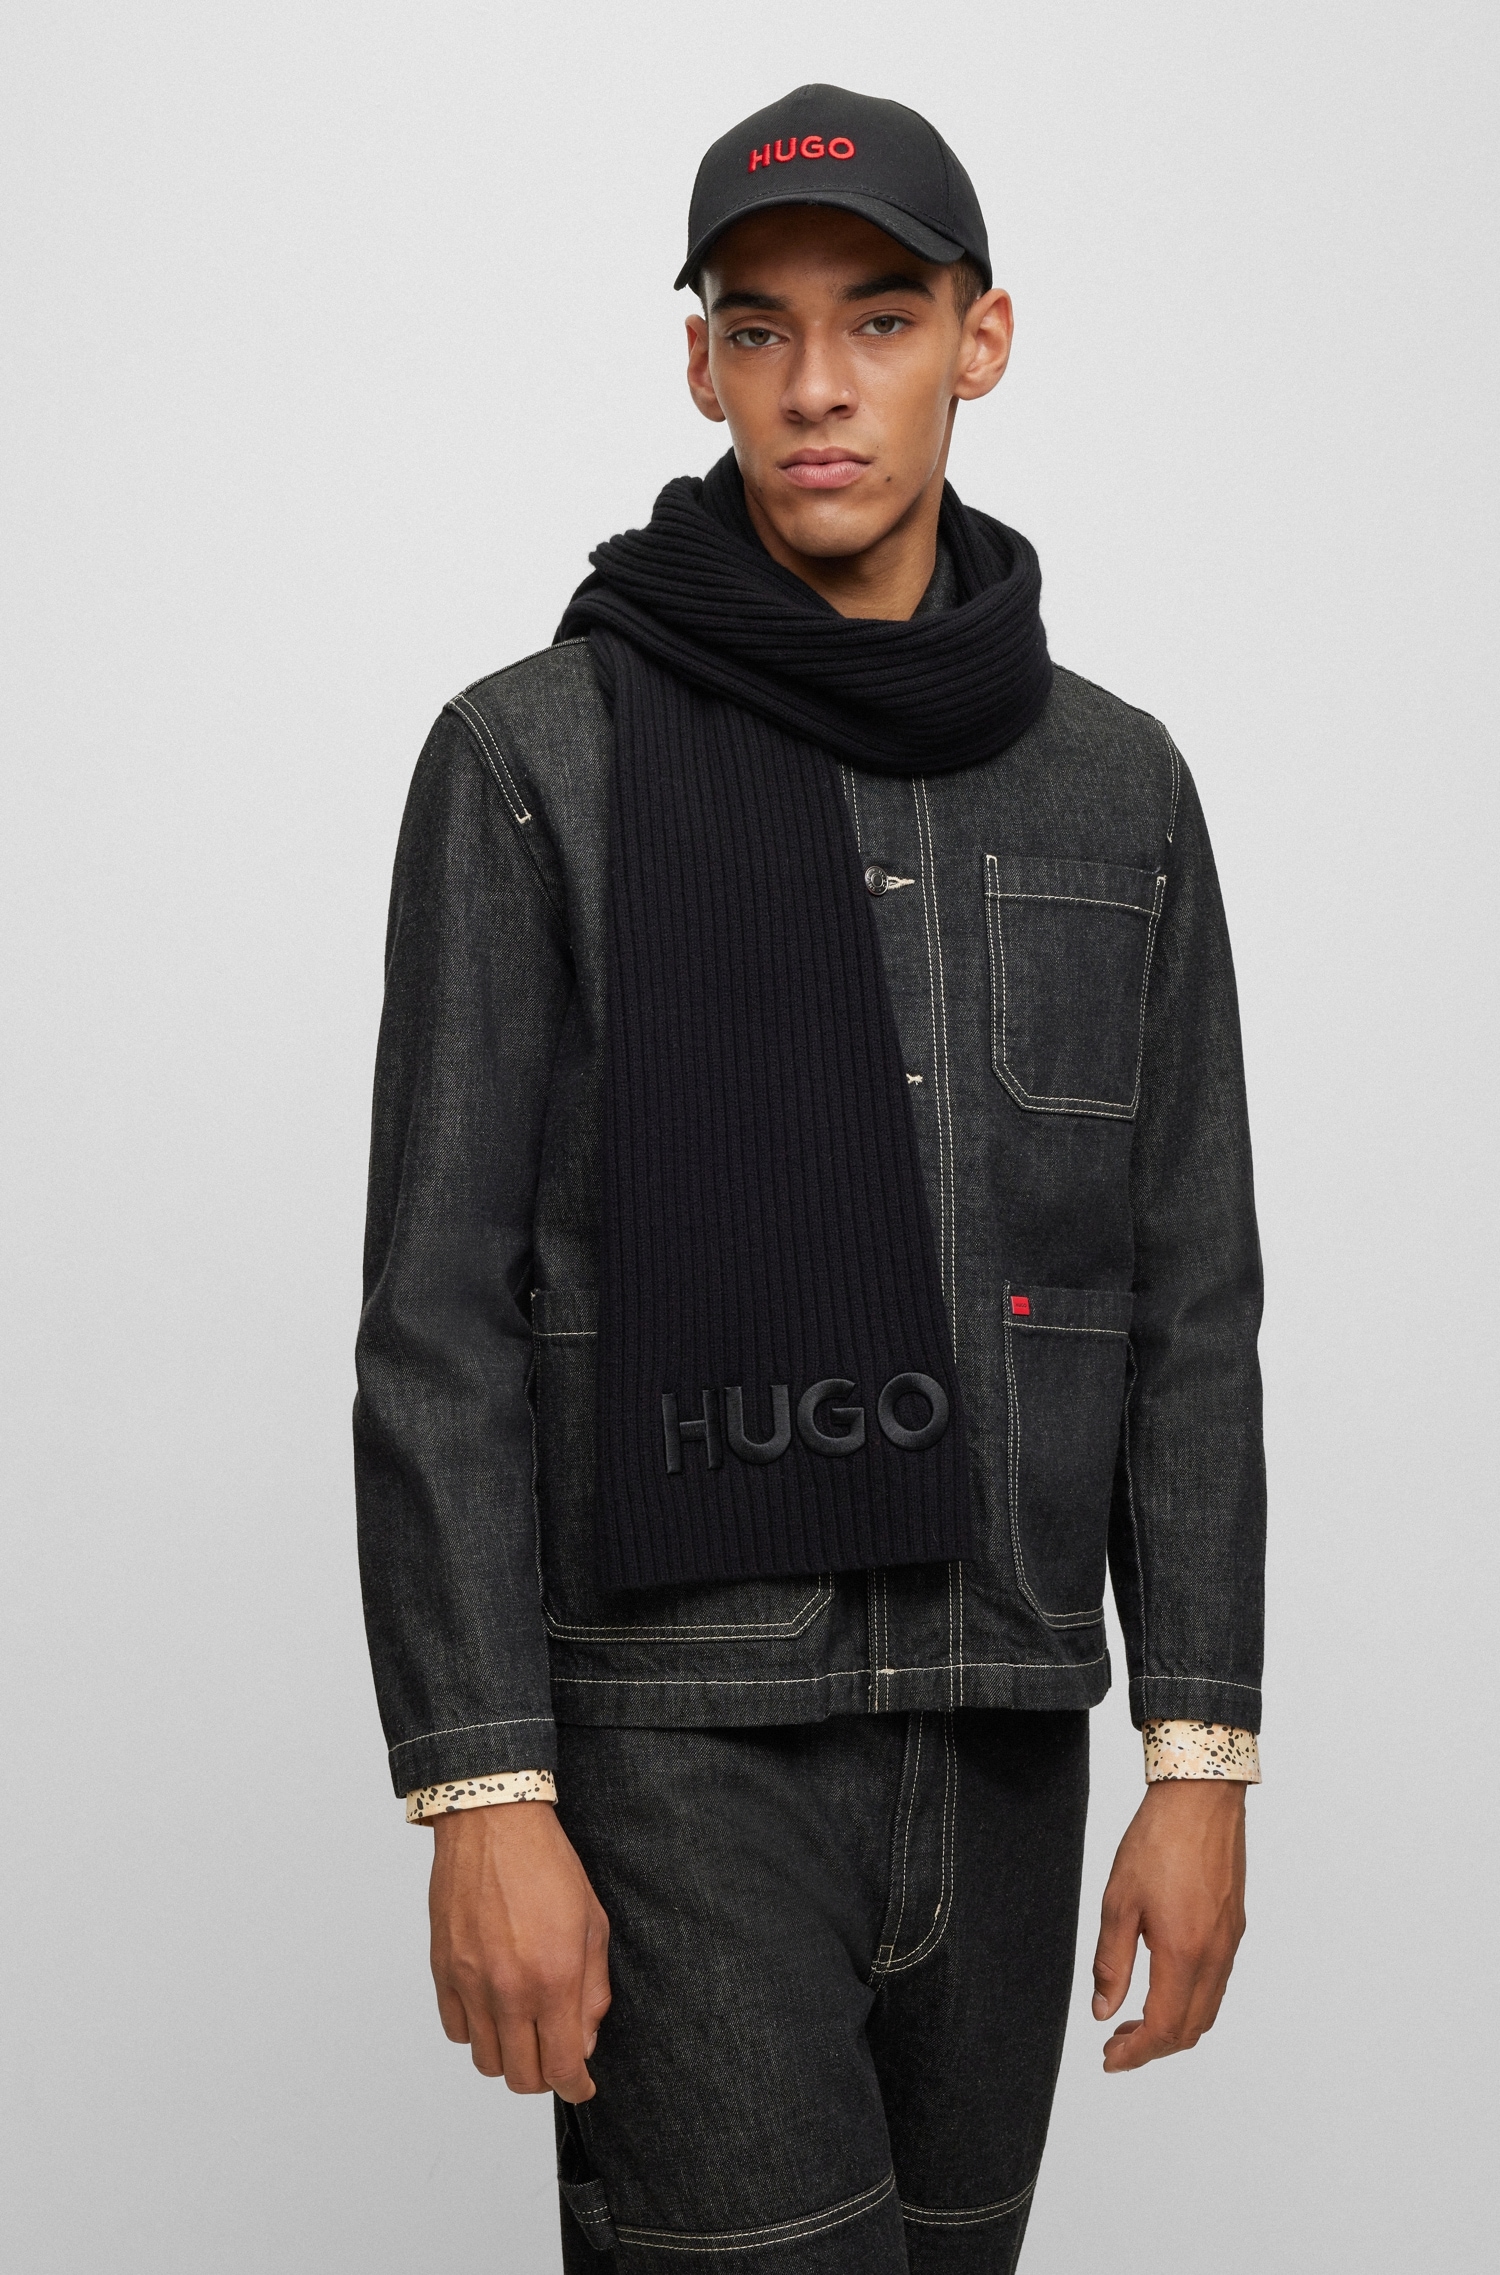 HUGO Schal mit HUGO-Logoschriftzug | BAUR kaufen online »Zunio-1«